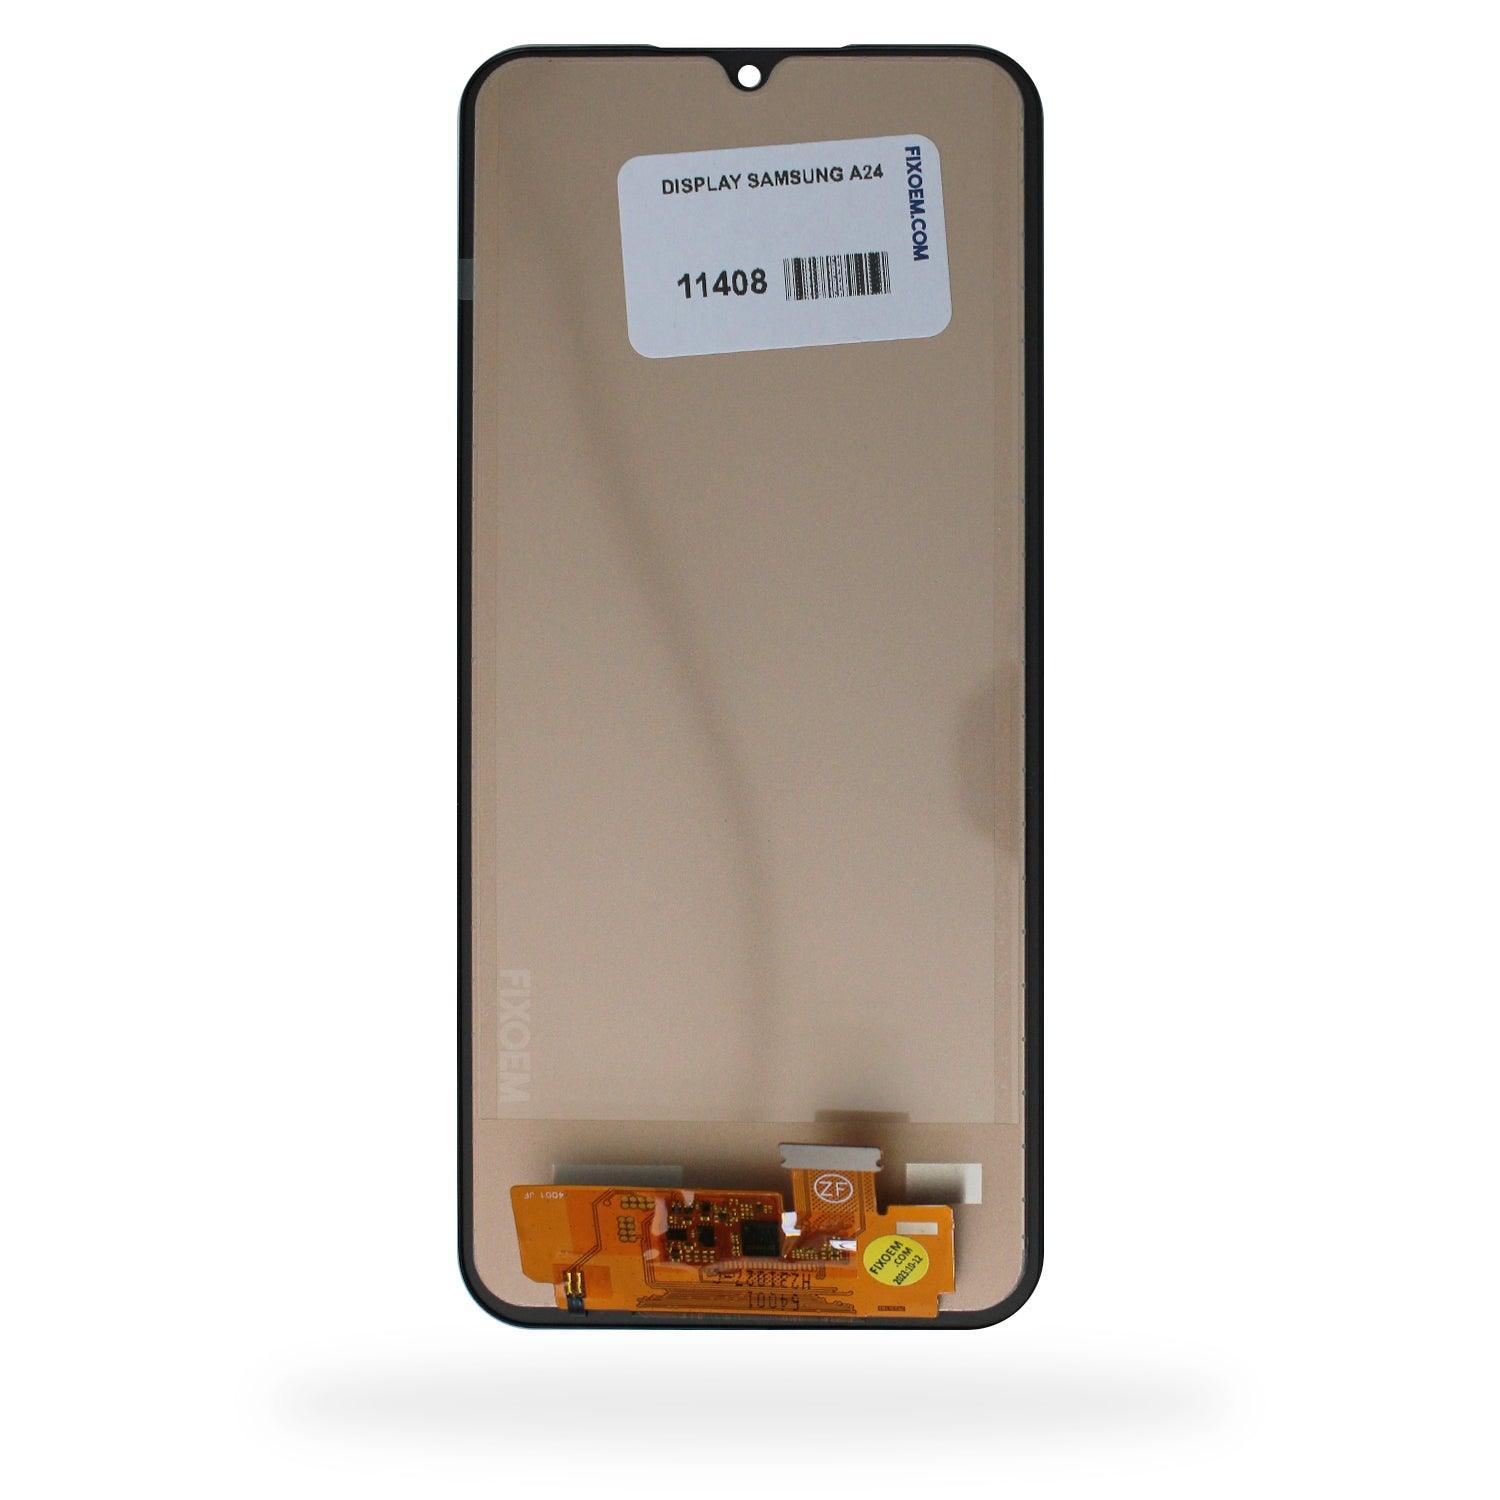 Display Samsung A24 4G A245 a solo $ 360.00 Refaccion y puestos celulares, refurbish y microelectronica.- FixOEM